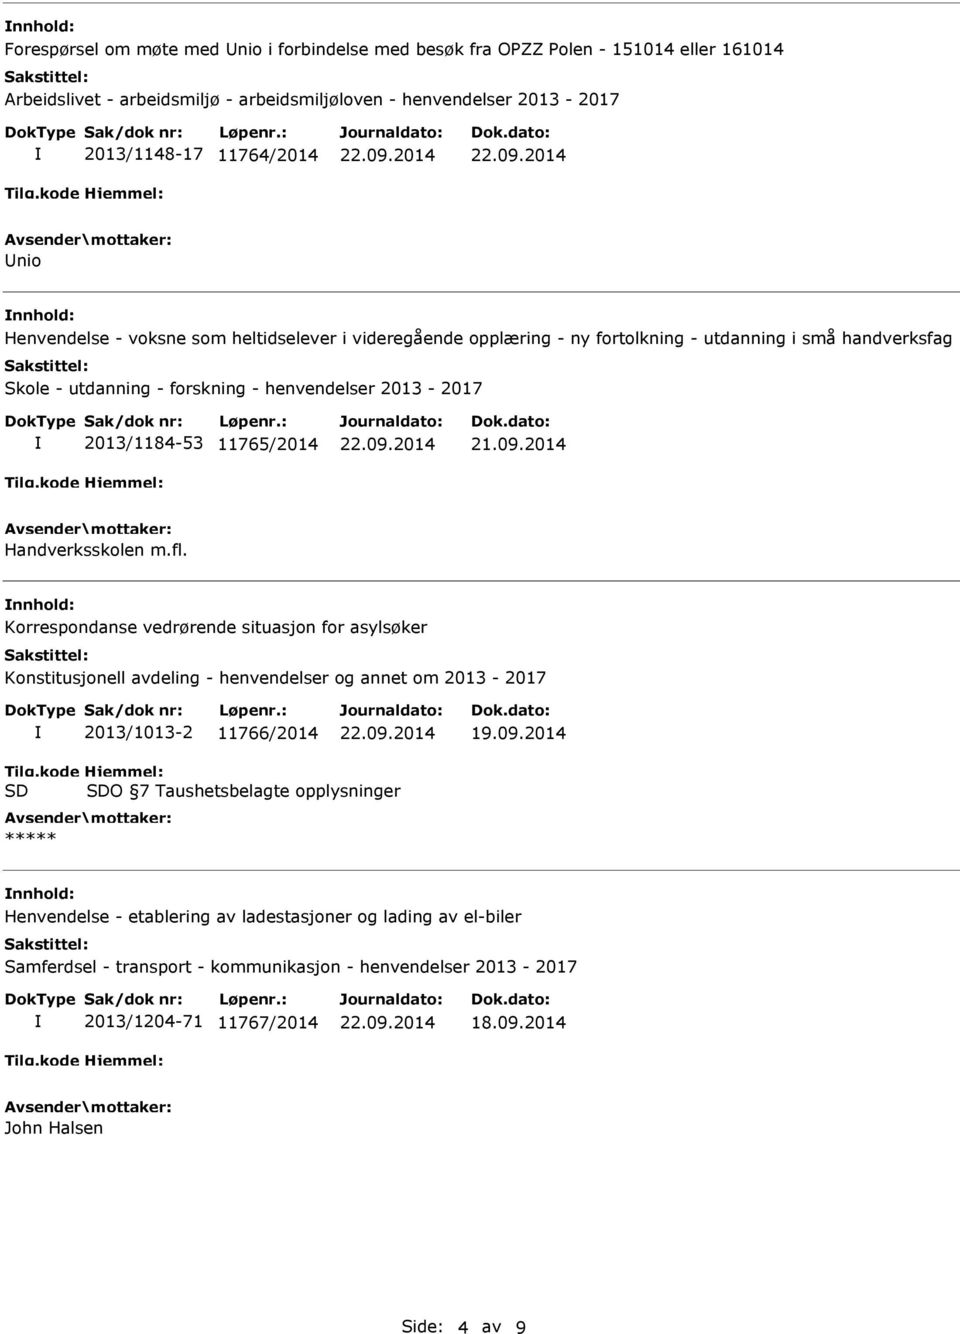 2013/1184-53 11765/2014 21.09.2014 Handverksskolen m.fl.